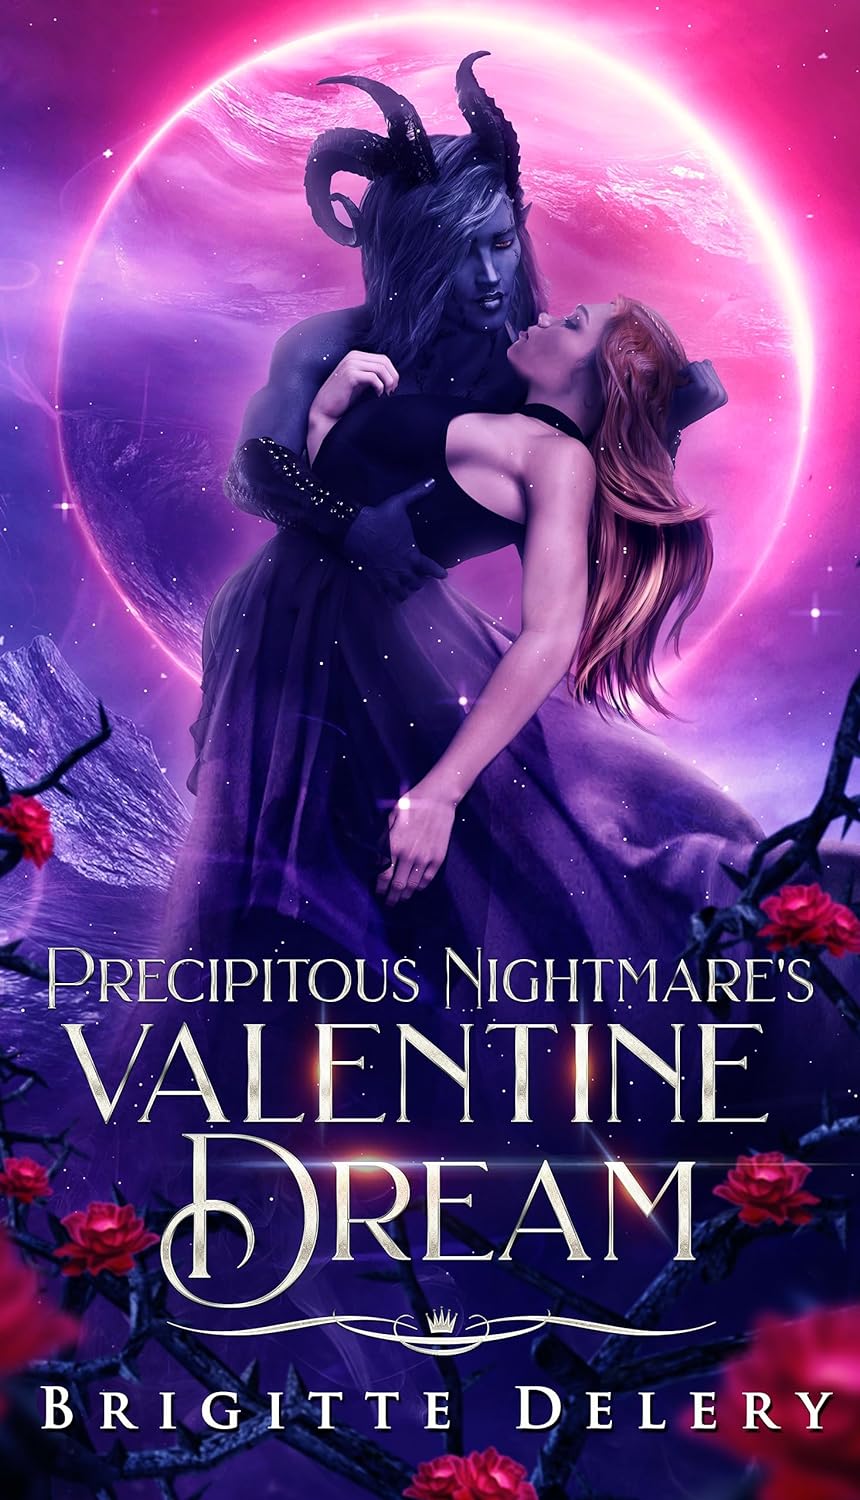 Precipitous Nightmare’s Valentine Dream by Brigitte Delery